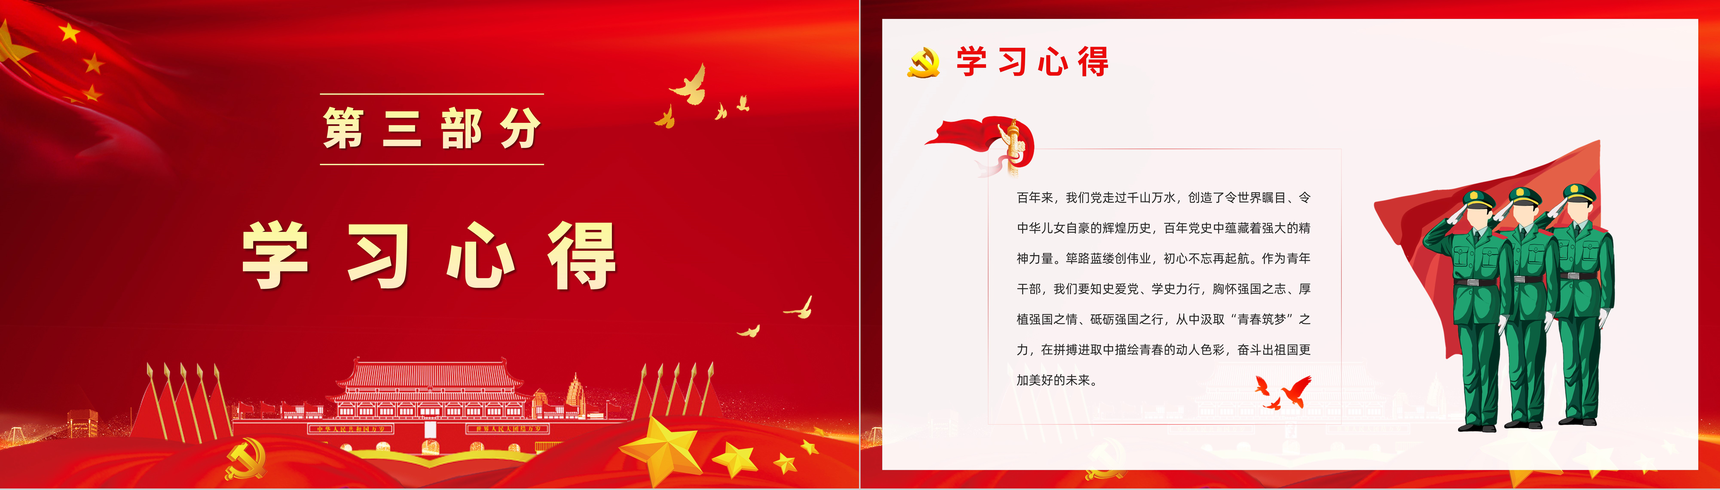 《中国共产党简史》学习基层党政党员学党史悟思想教育专题讲座PPT模板-8